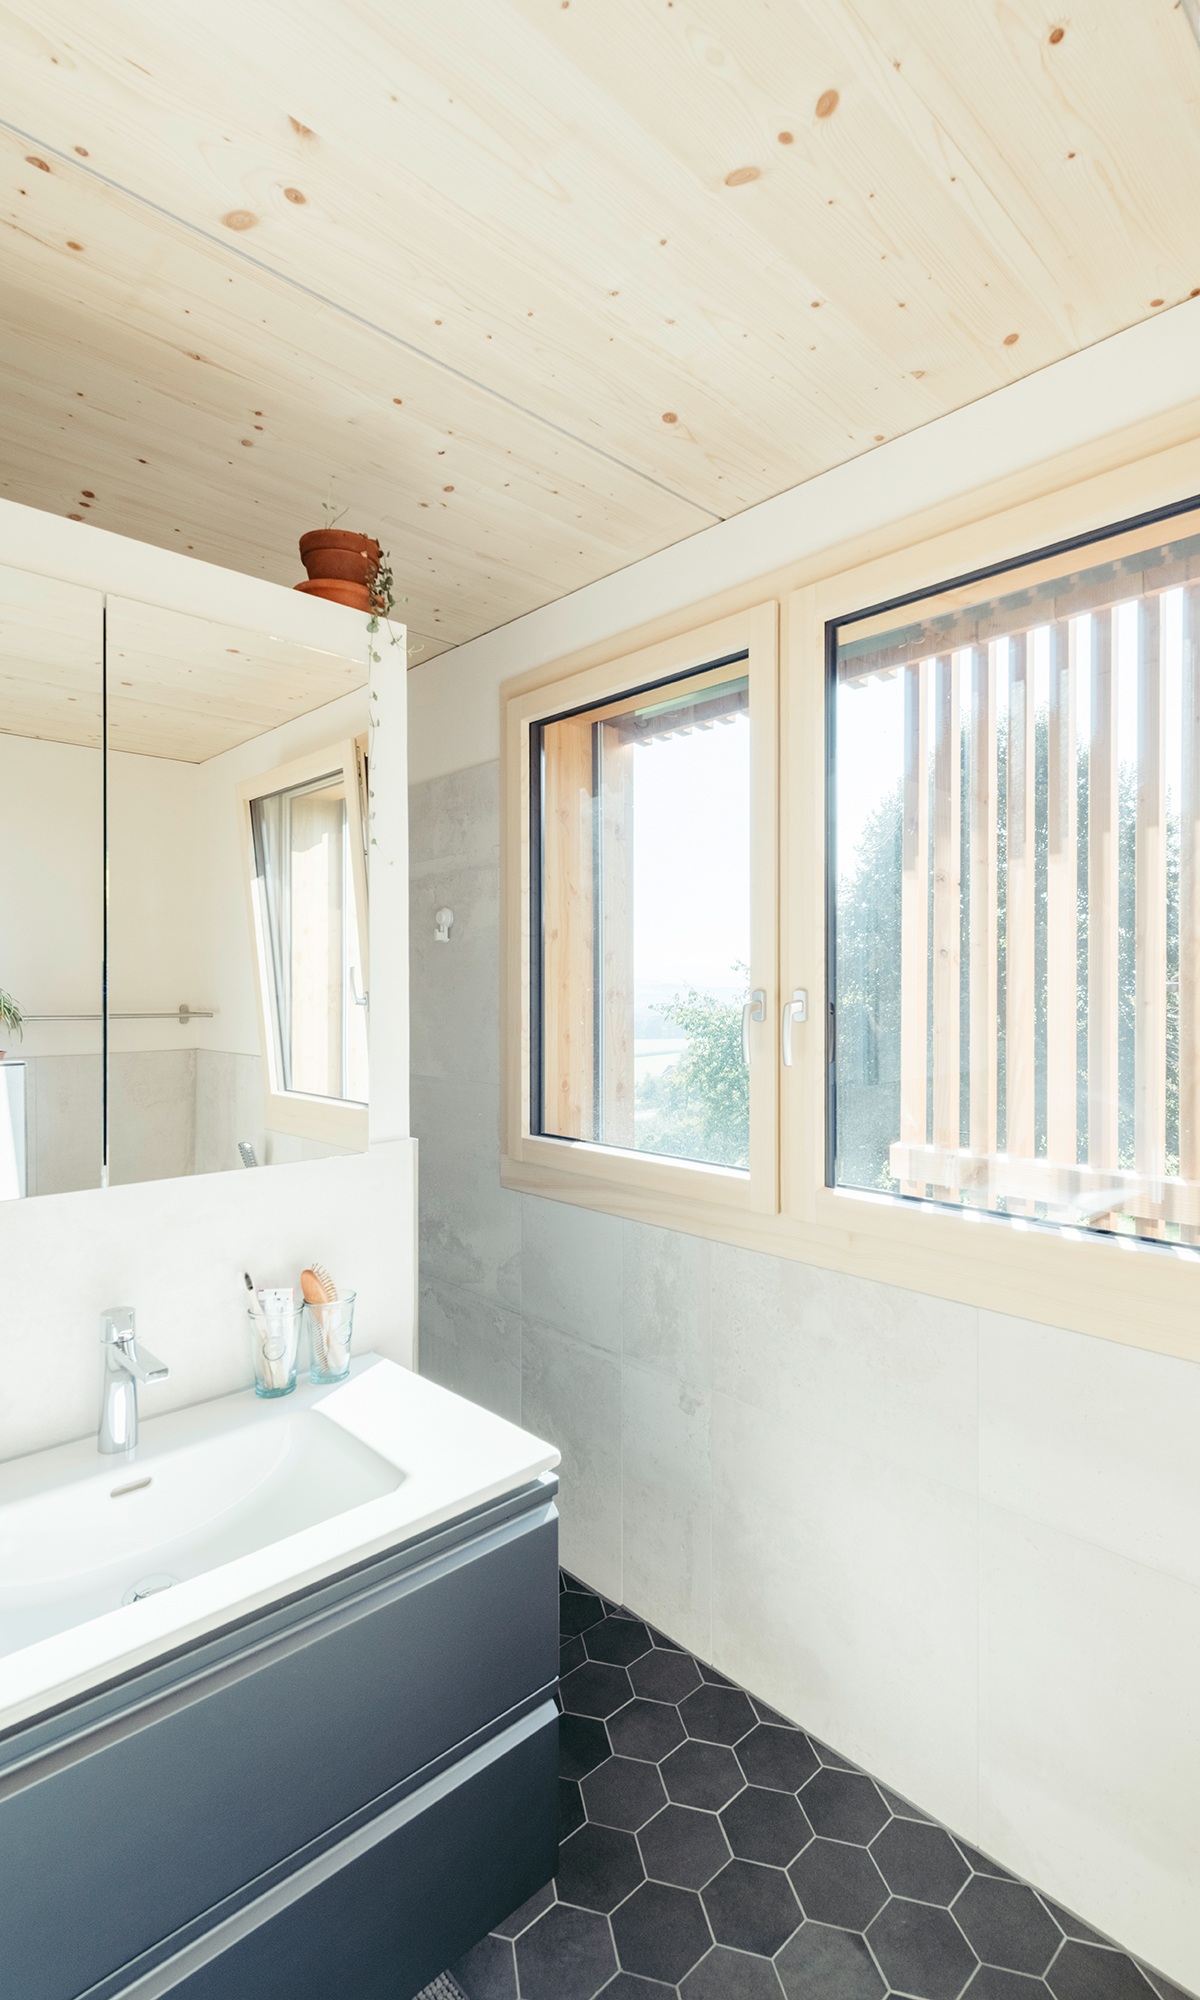 Viel natürliches Licht fällt durch die Fenster ins Badezimmer mit grauem Fussboden und Badmöbeln.